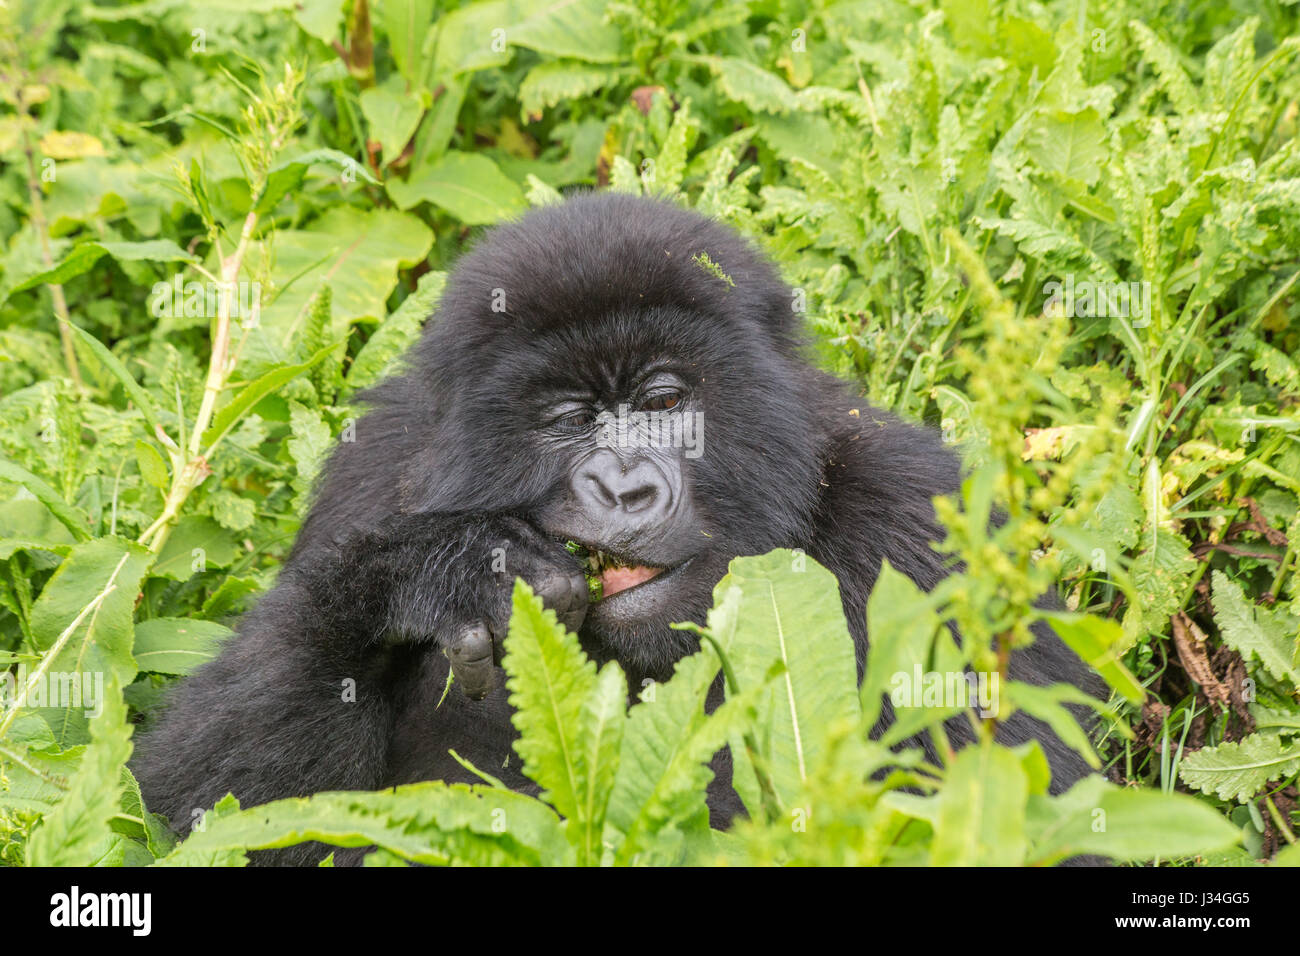 Les jeunes en danger critique gorille de montagne (Gorilla beringei beringei) du groupe Agashya, prises dans le parc national des volcans, Rwanda, Afrique du Sud Banque D'Images